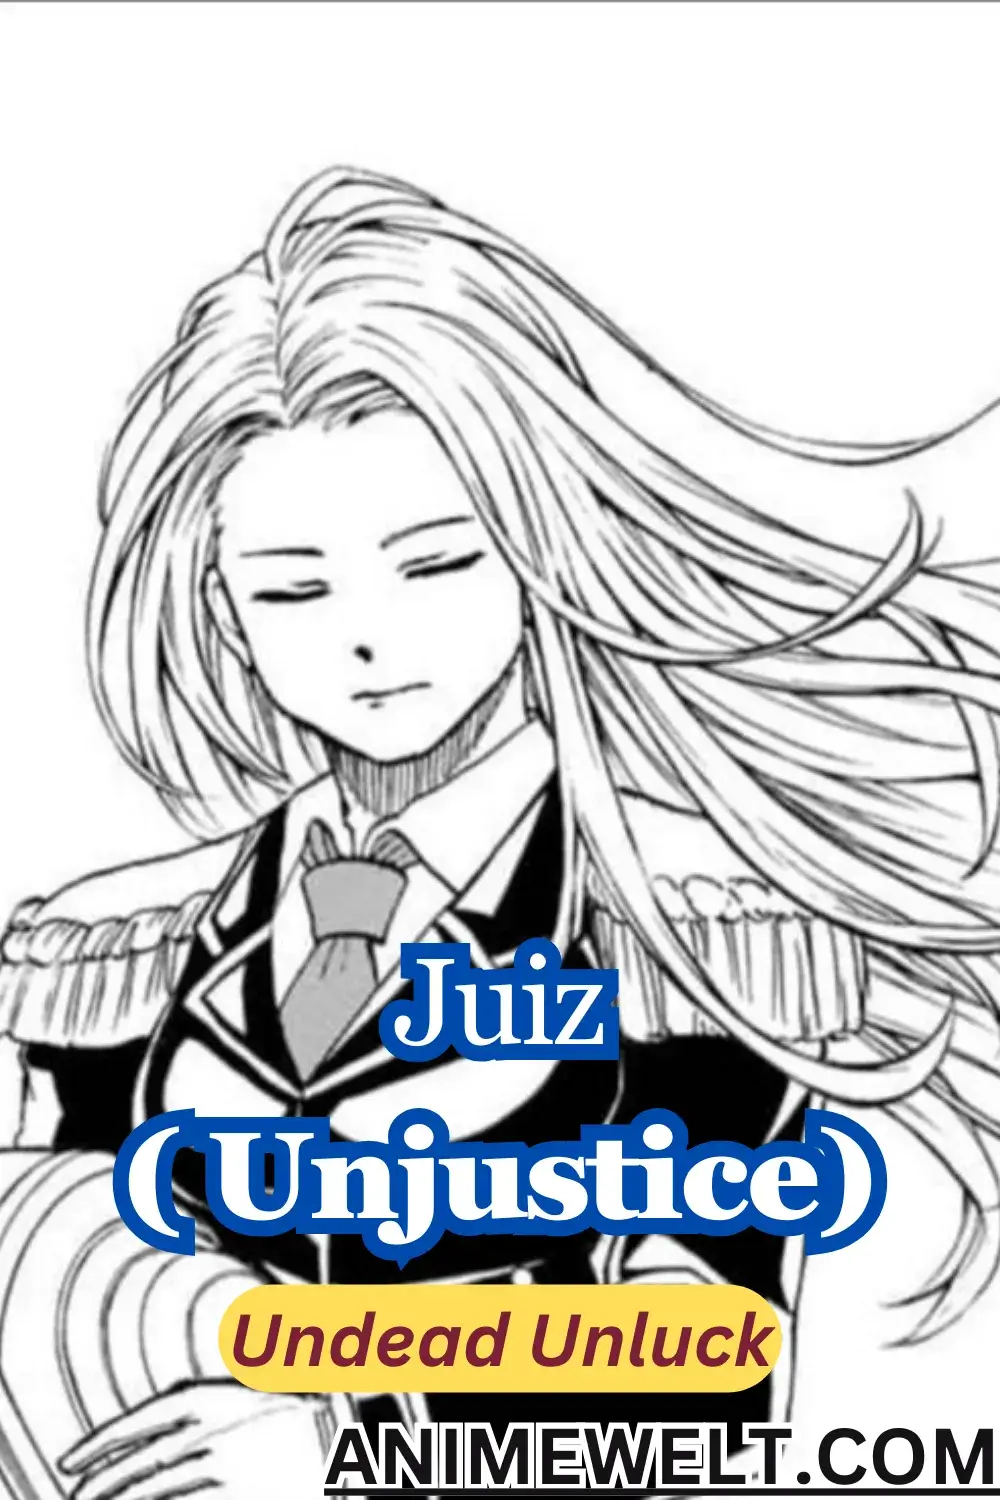 Juiz the leader of union Unjustice from Unluck Undead manga